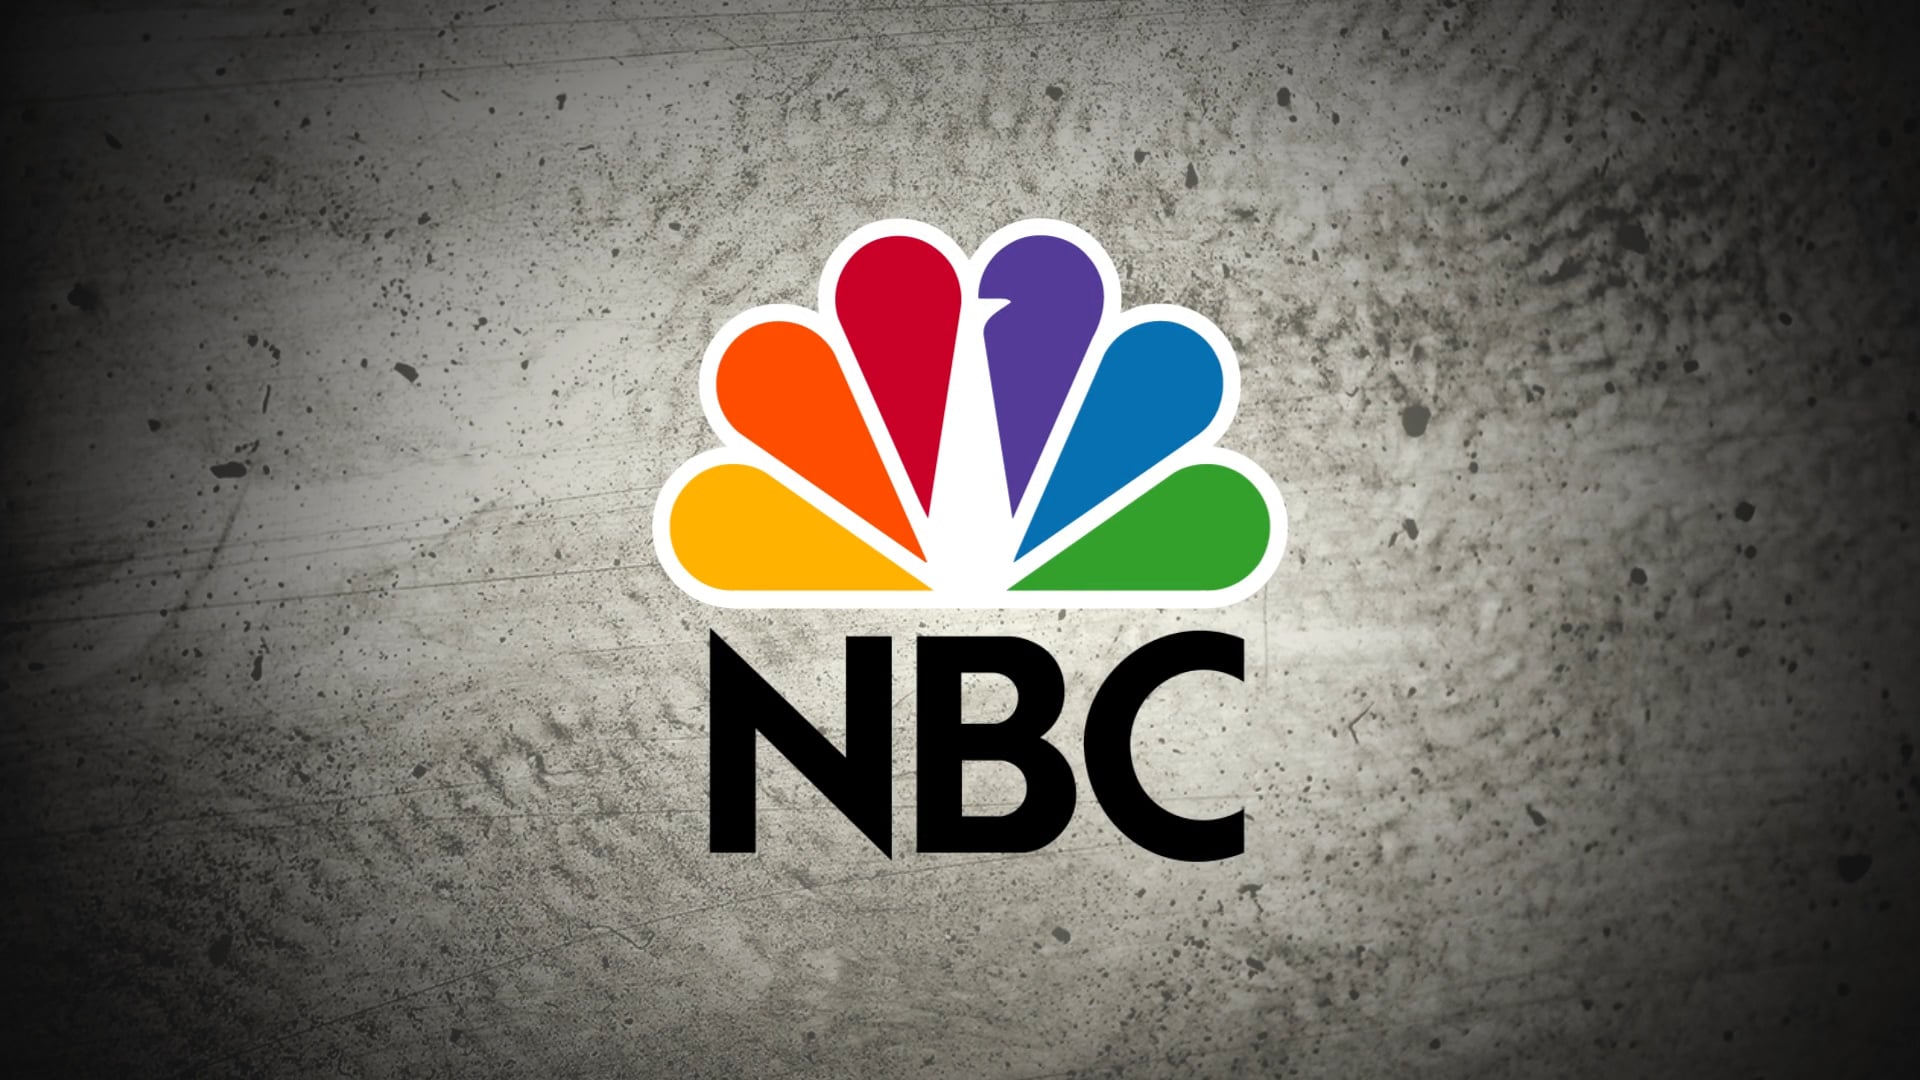 NBC NEWS - STOLEN GUNS